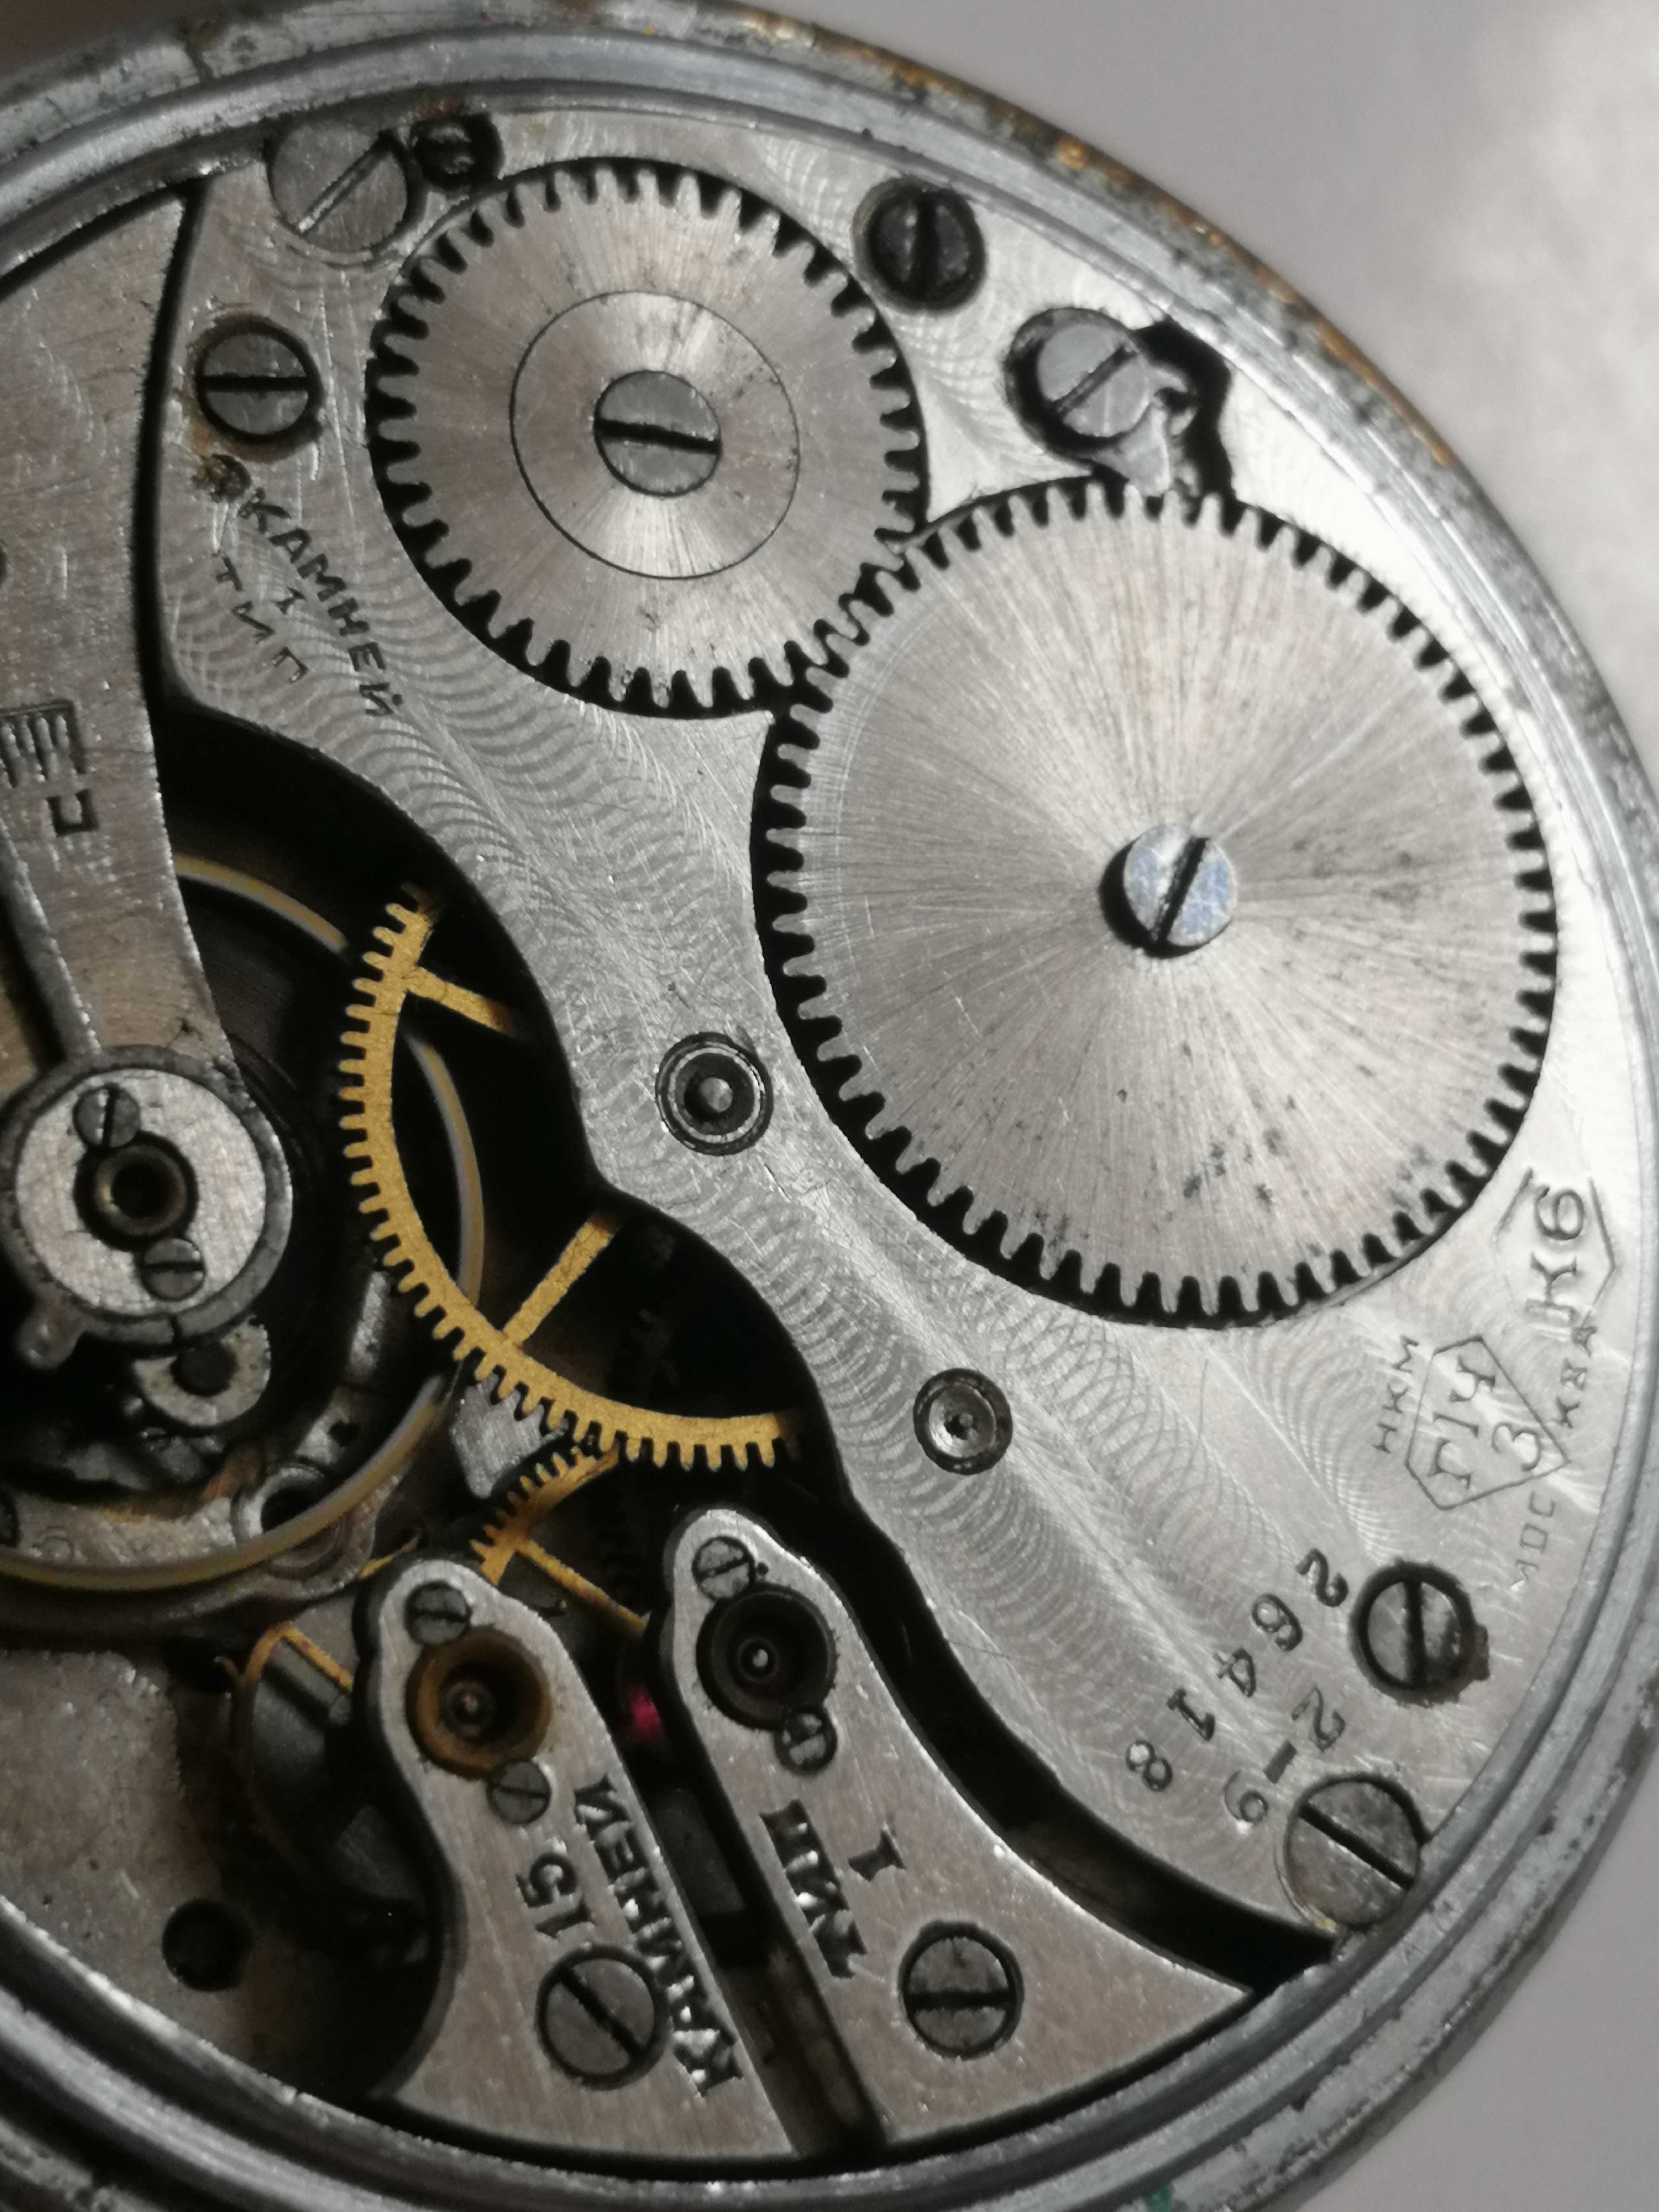 Zegarek kieszonkowy K-43 z 1 Państwowej Fabryki zegarów im Kirowa